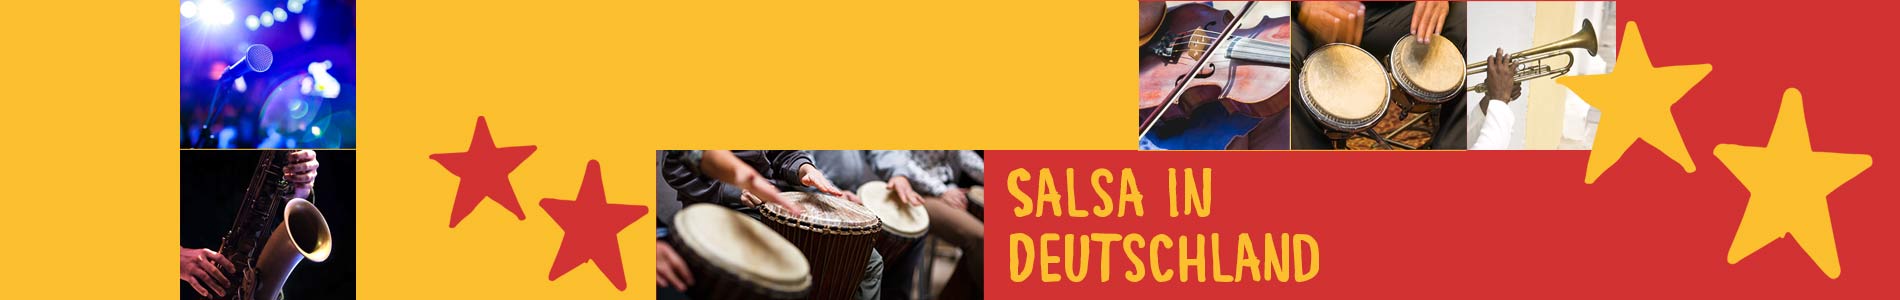 Salsa in Breitenworbis – Salsa lernen und tanzen, Tanzkurse, Partys, Veranstaltungen